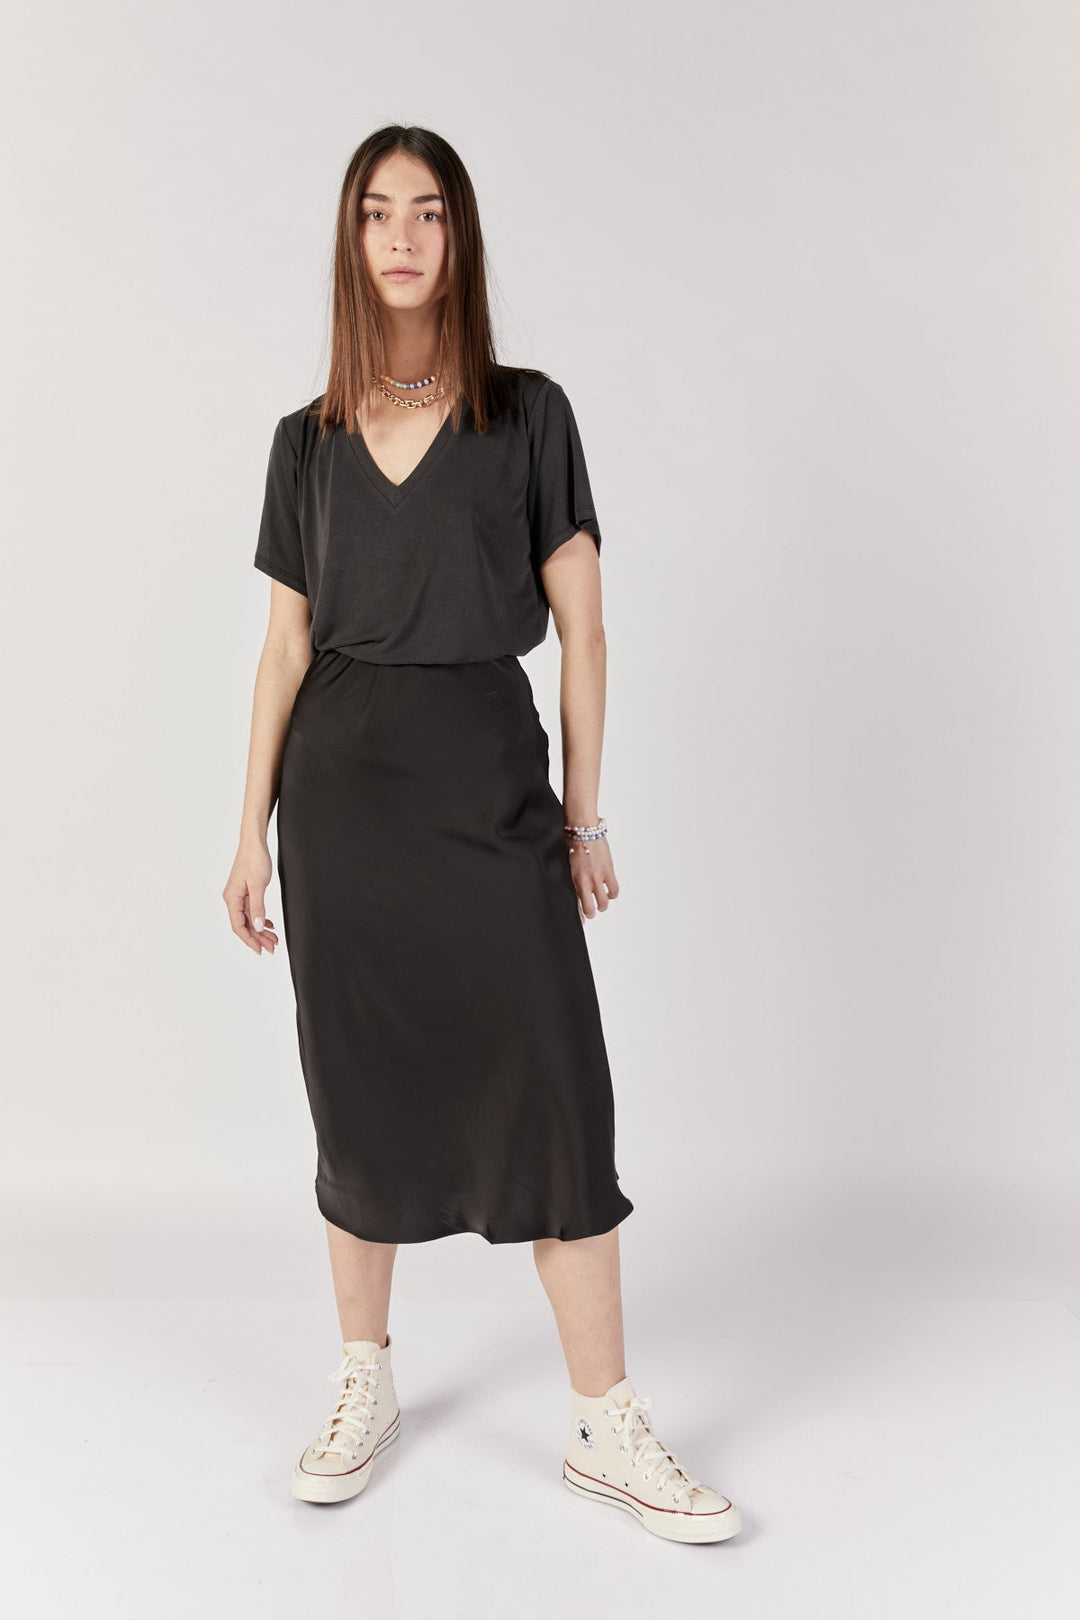 חצאית מידי בלאנק בצבע שחור - Razili Studio